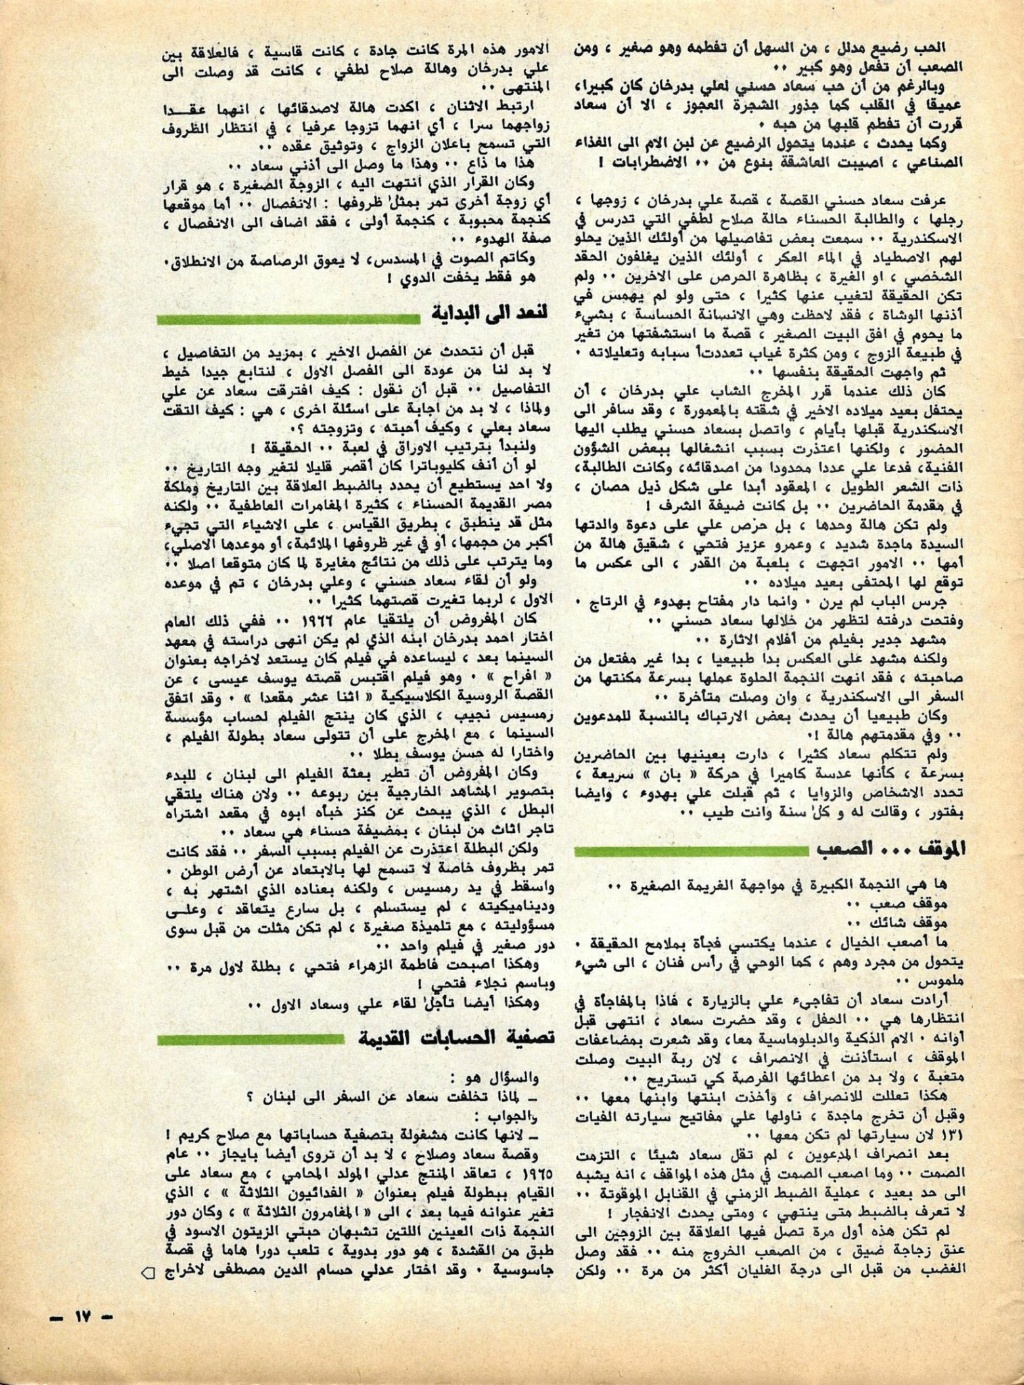 الذي - مقال صحفي : سعاد حسني وعلي بدرخان وقصة الحب الذي كان 1981 م 611